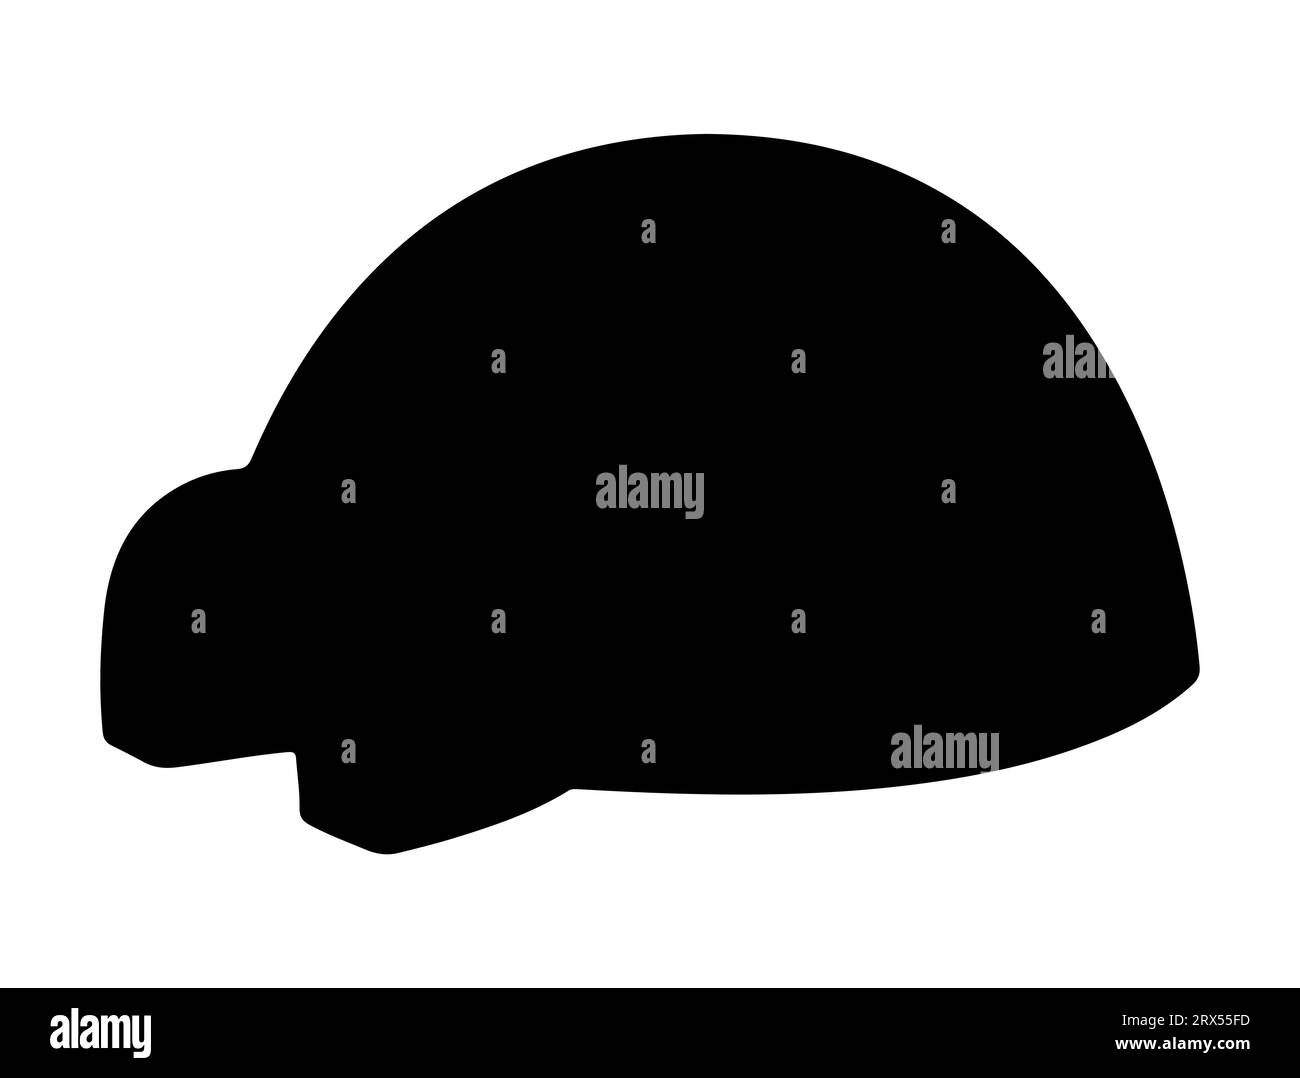 Igloo silhouette vecteur art fond blanc Illustration de Vecteur